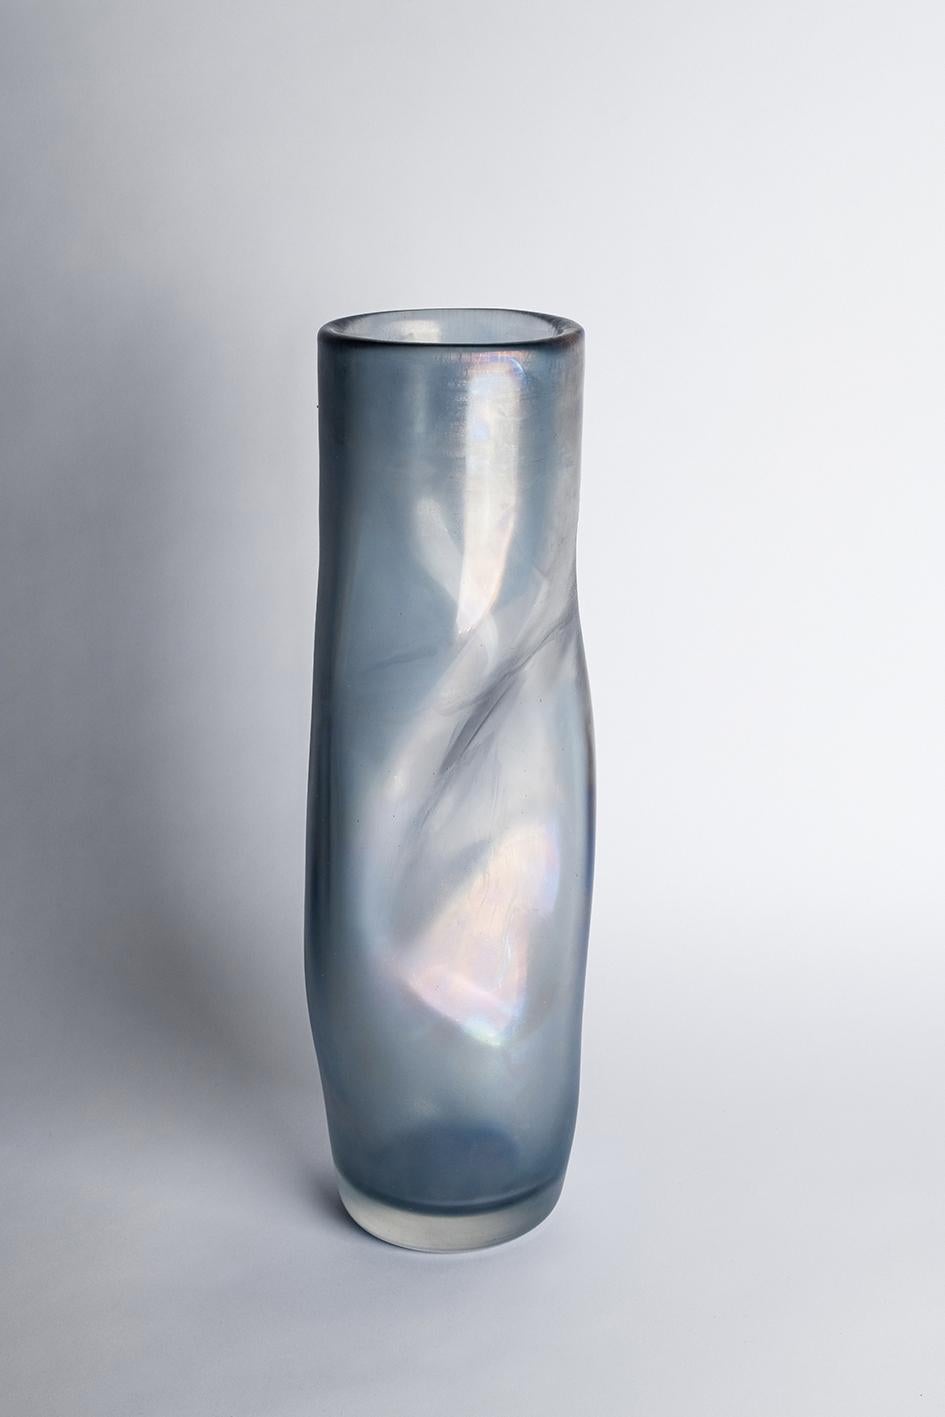 Rio-Vase von Purho
Abmessungen: T15 x H58 cm
MATERIALIEN: Muranoglas
Erhältlich in anderen Farben.

Rio ist eine Vase aus der Laguna Collection, entworfen von Ludovica+Roberto Palomba für Purho im Frühjahr 2022.
Das schlanke, gewundene, scheinbar